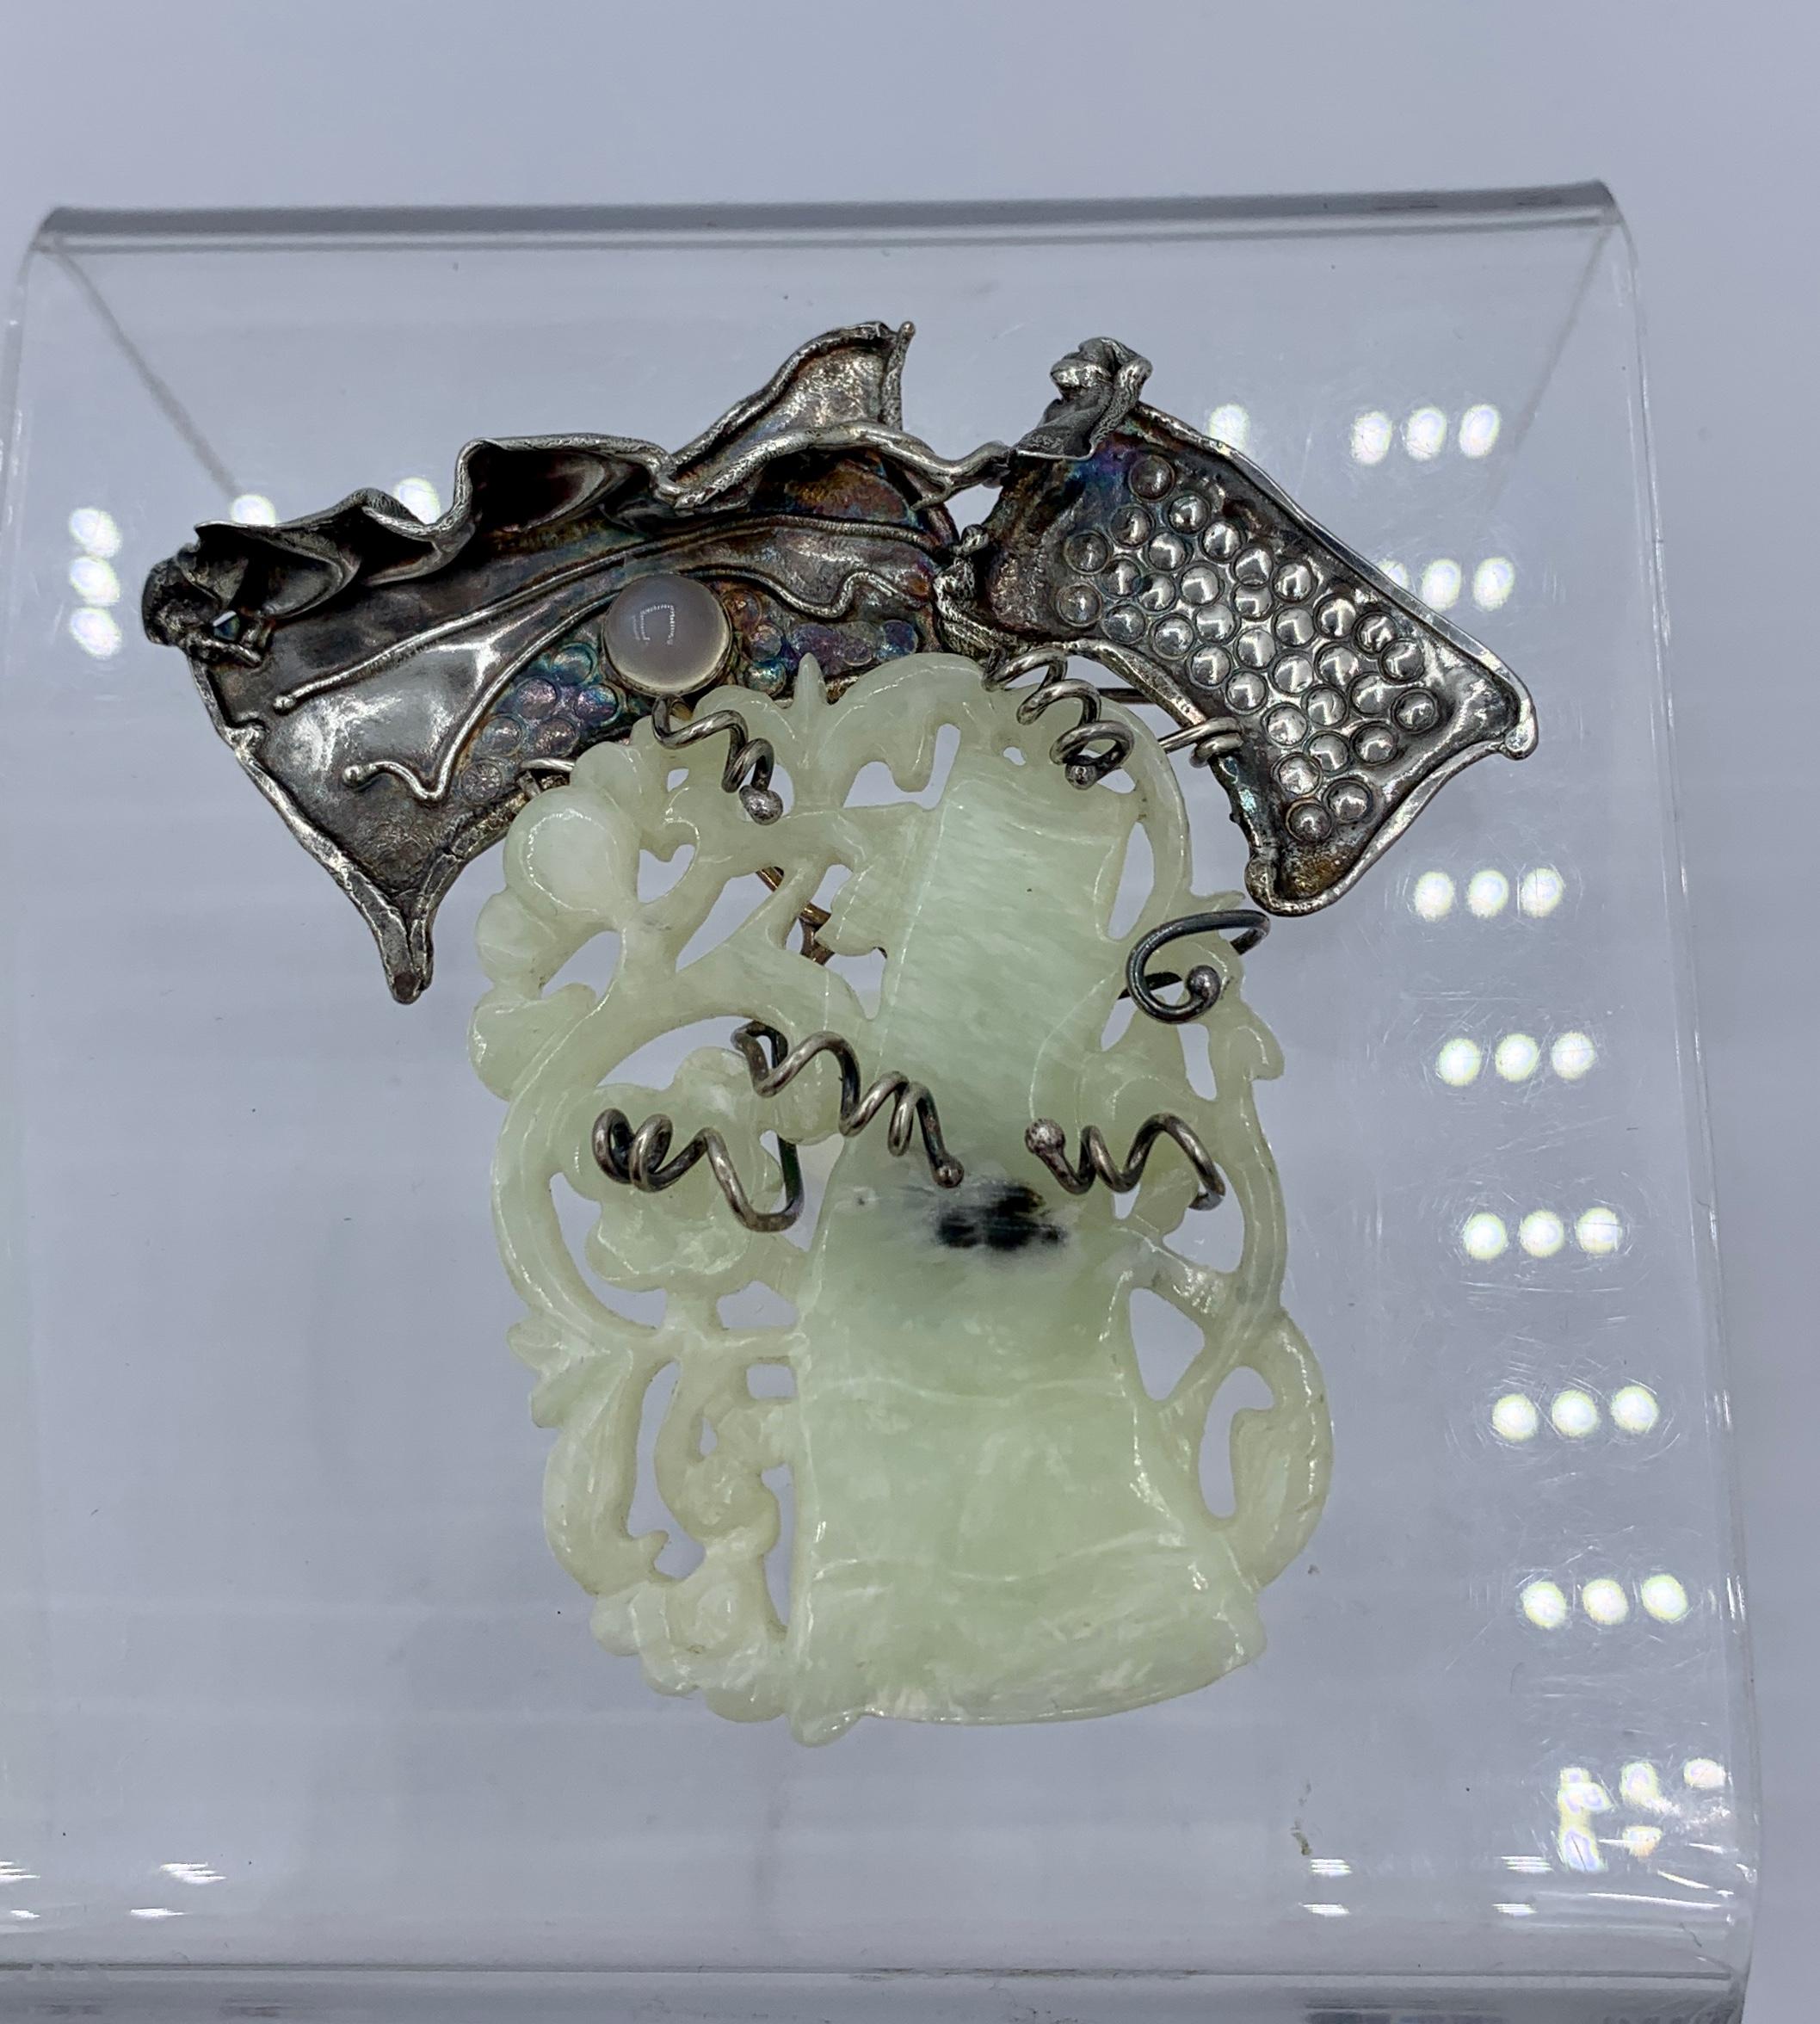 Dies ist eine atemberaubende Modernist Brosche Pin mit einer wunderbaren Hand geschnitzt Jade Zentrum mit Bildern von einem Baum mit Obst.  Die wunderbare durchbrochene Jade ist in gewundene silberne Zweige eingefasst.  Der obere Teil der Brosche